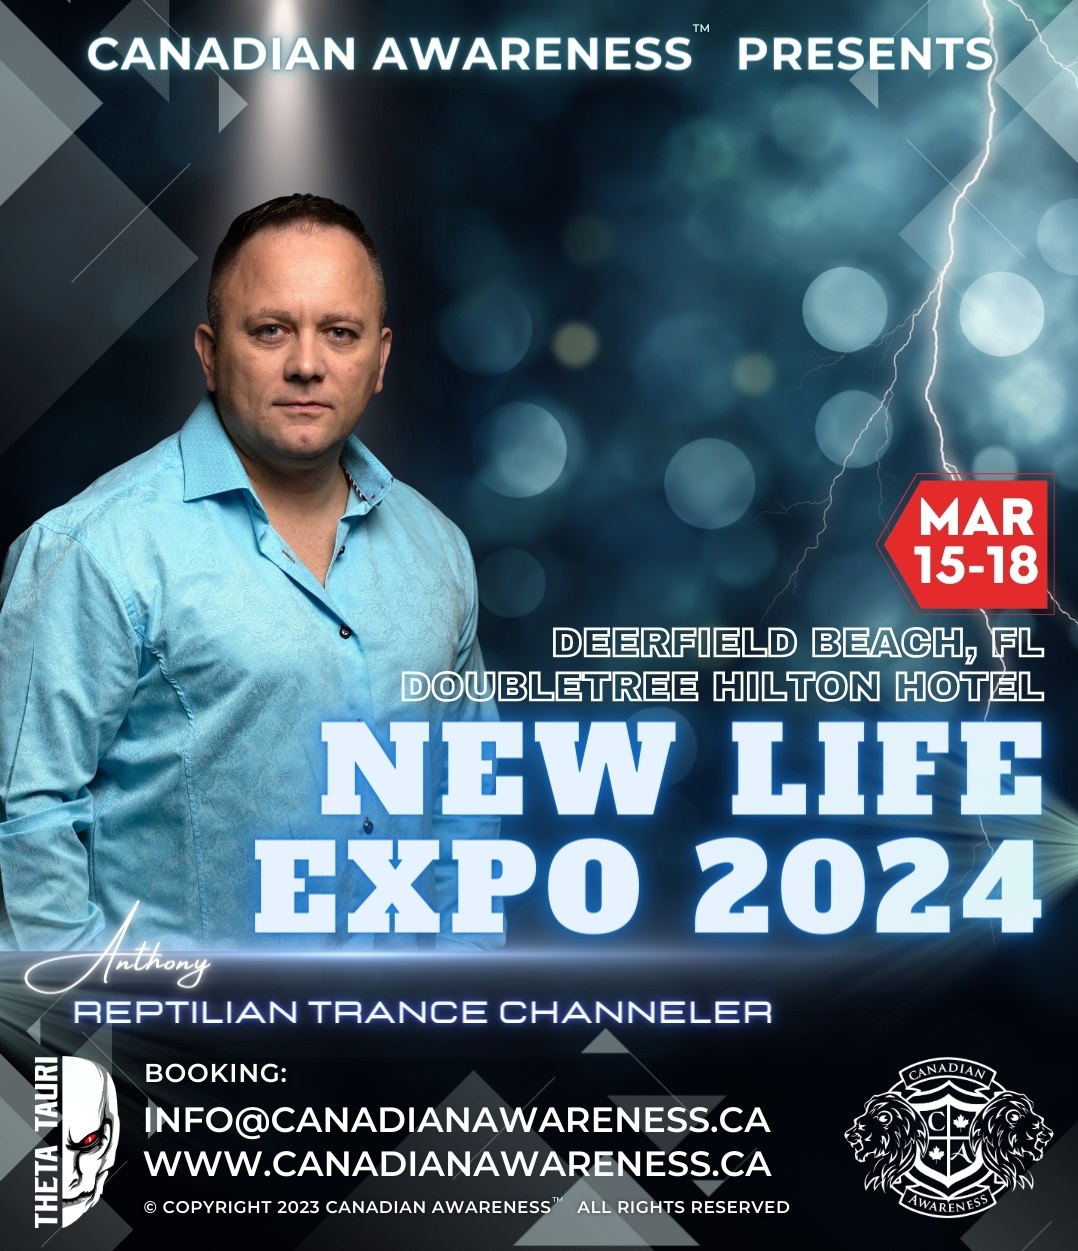 New Life Expo 2024 CANADIAN AWARENESS™